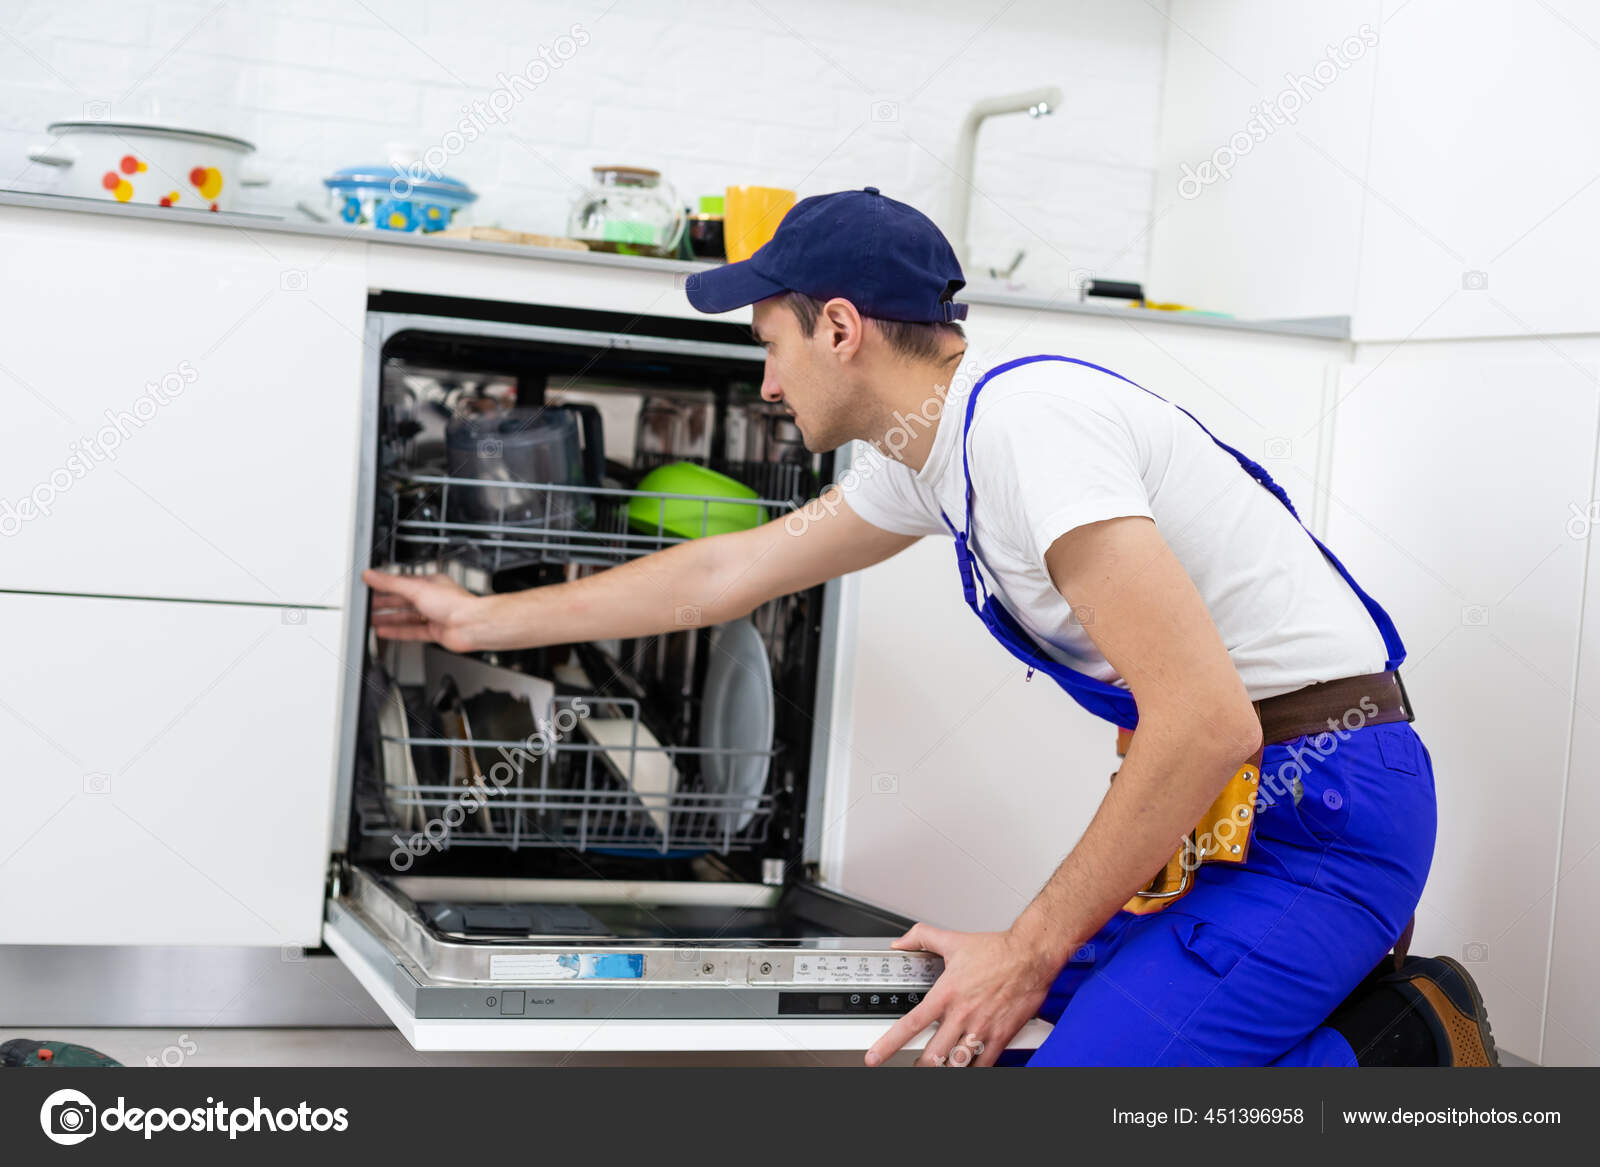 Reparation opvaskemaskiner. Føreren er kommet hjem og reparerer opvaskemaskinen — Stock-foto © sinenkiy #451396958